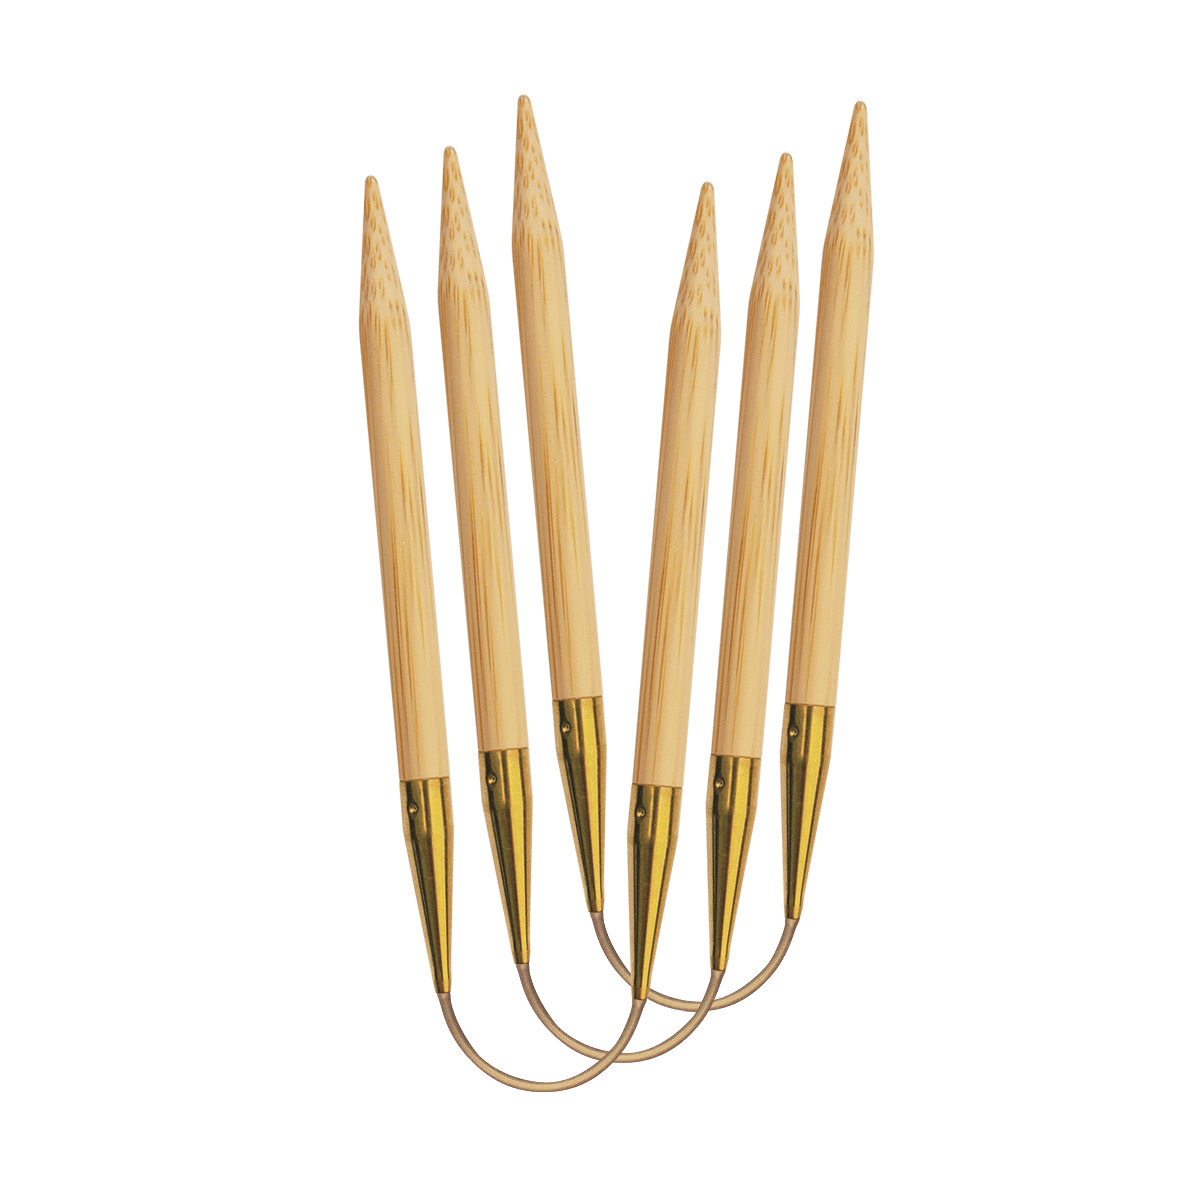 561 2 addiCraSyTrio Bamboo LONG 8mm frei rgb Kostenlose Strickanleitungen